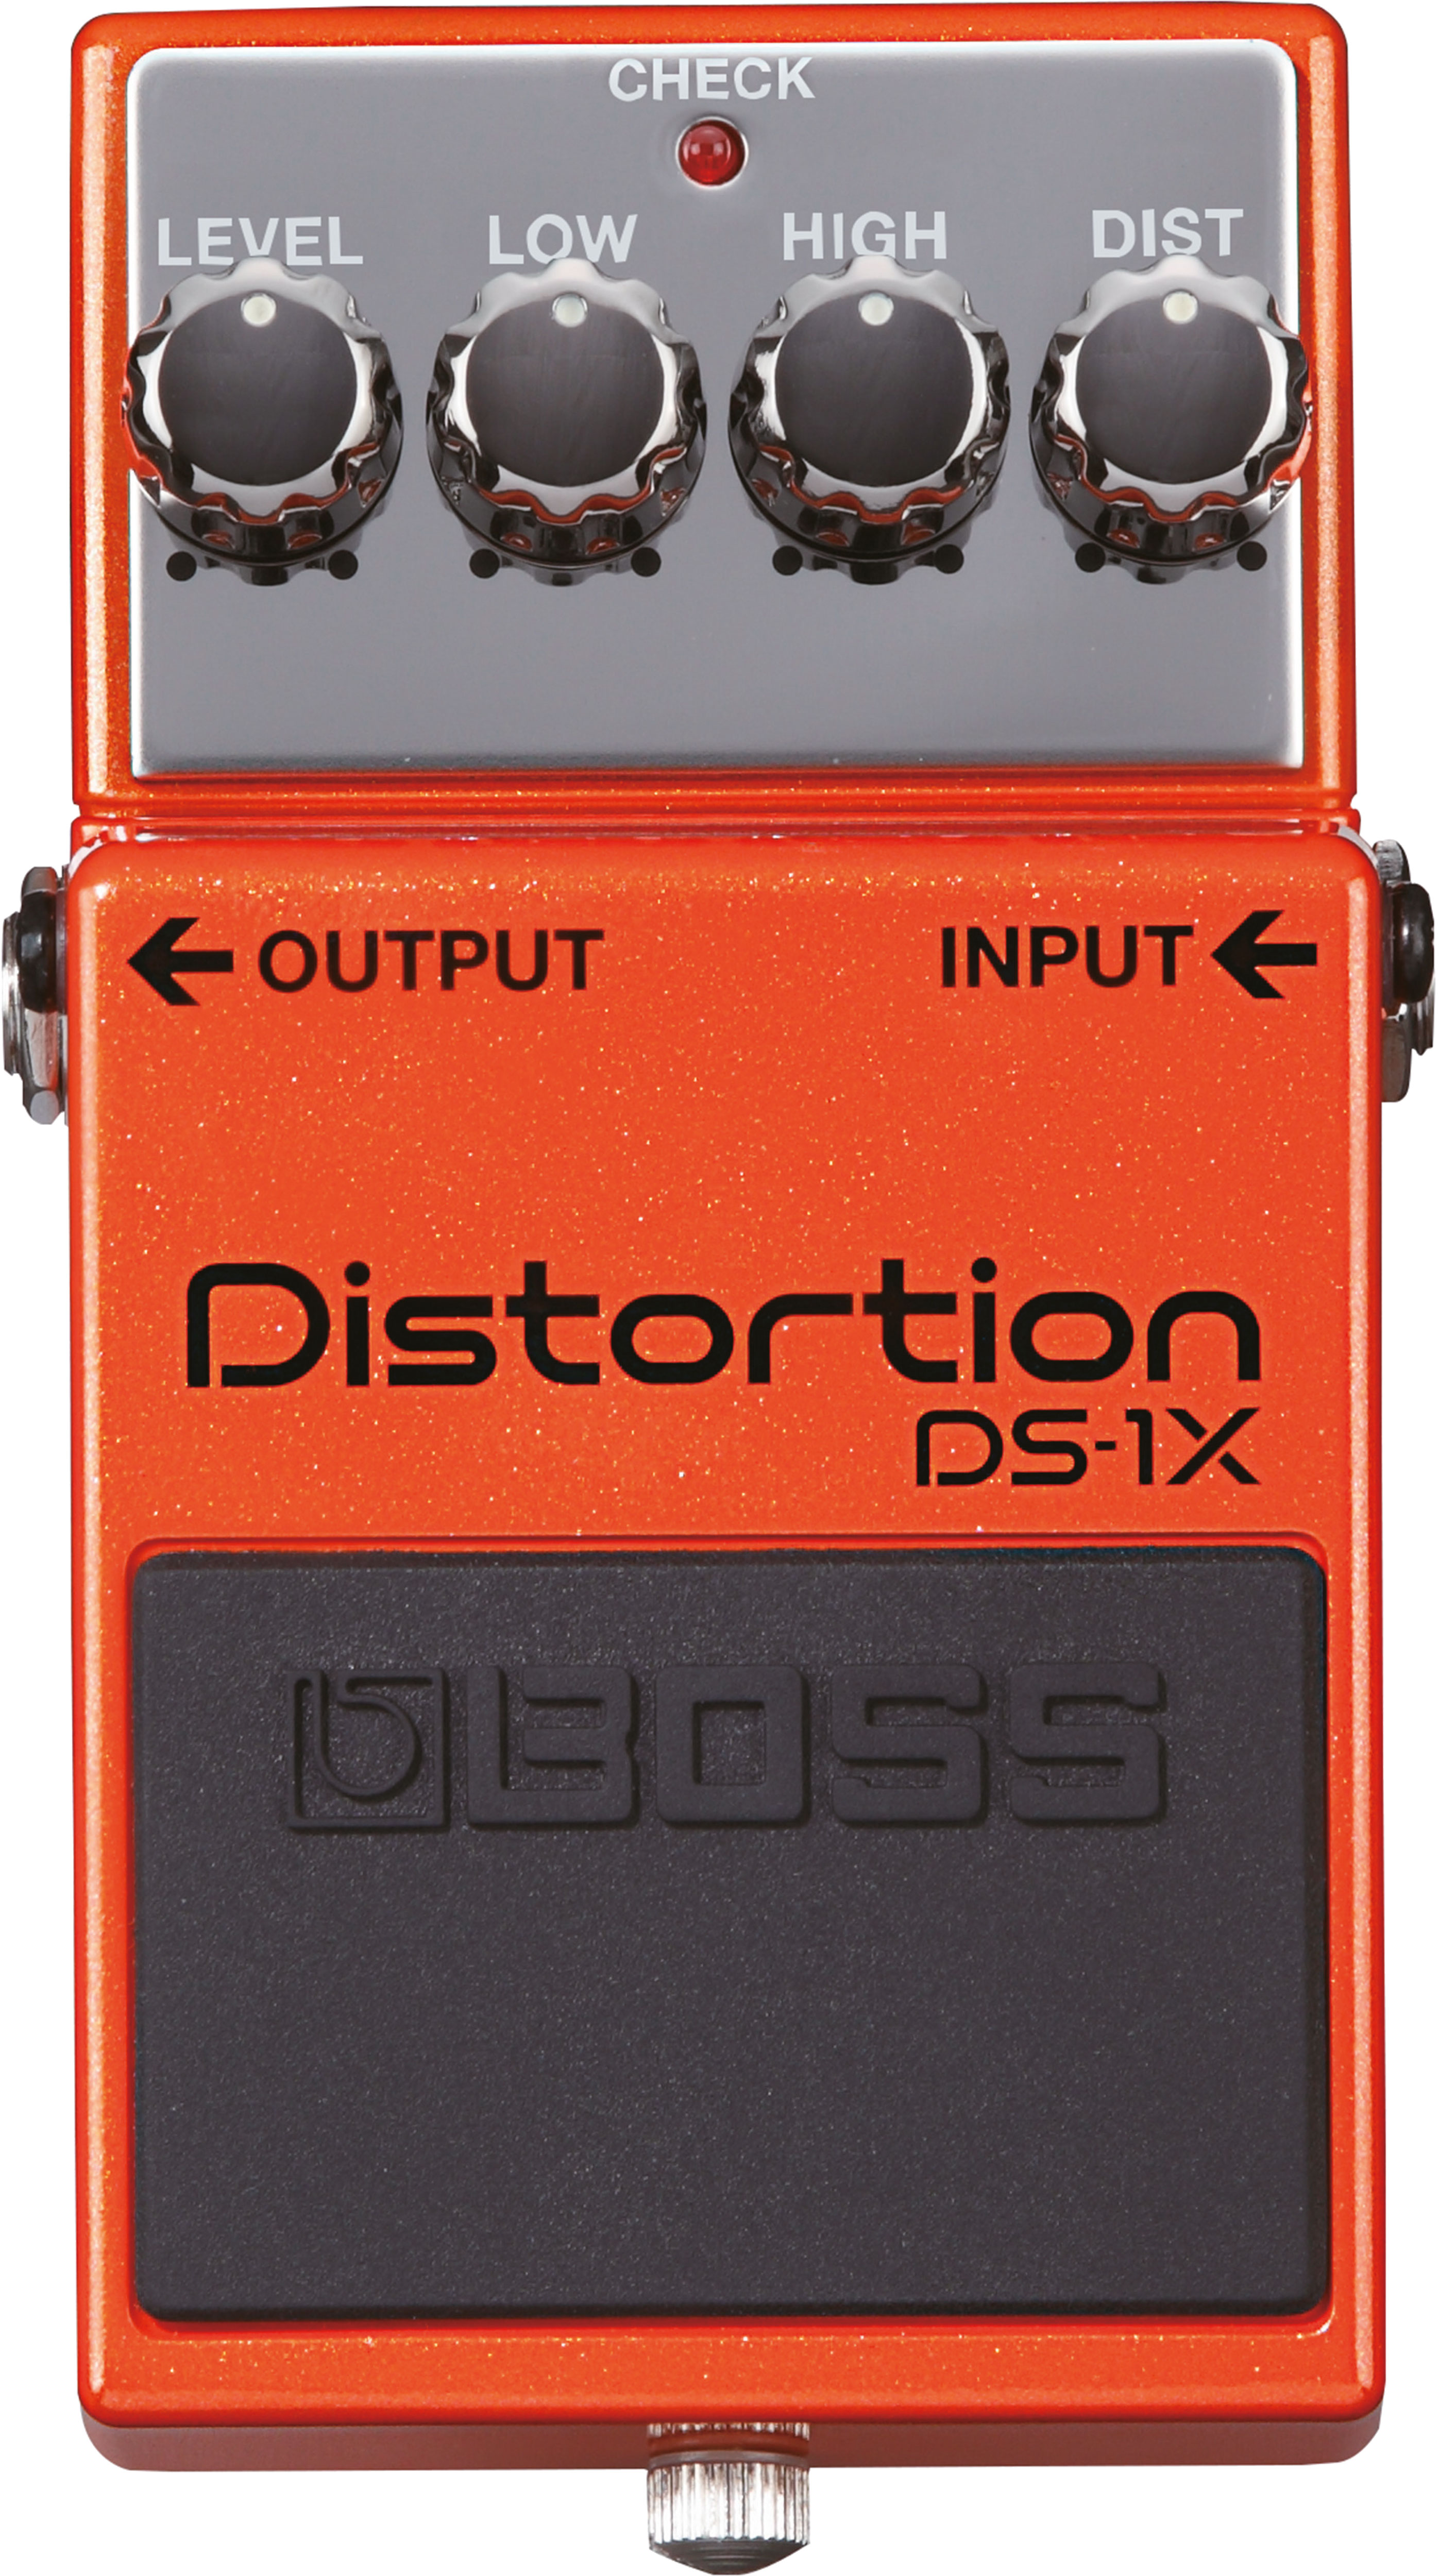 DS-1X Distortion